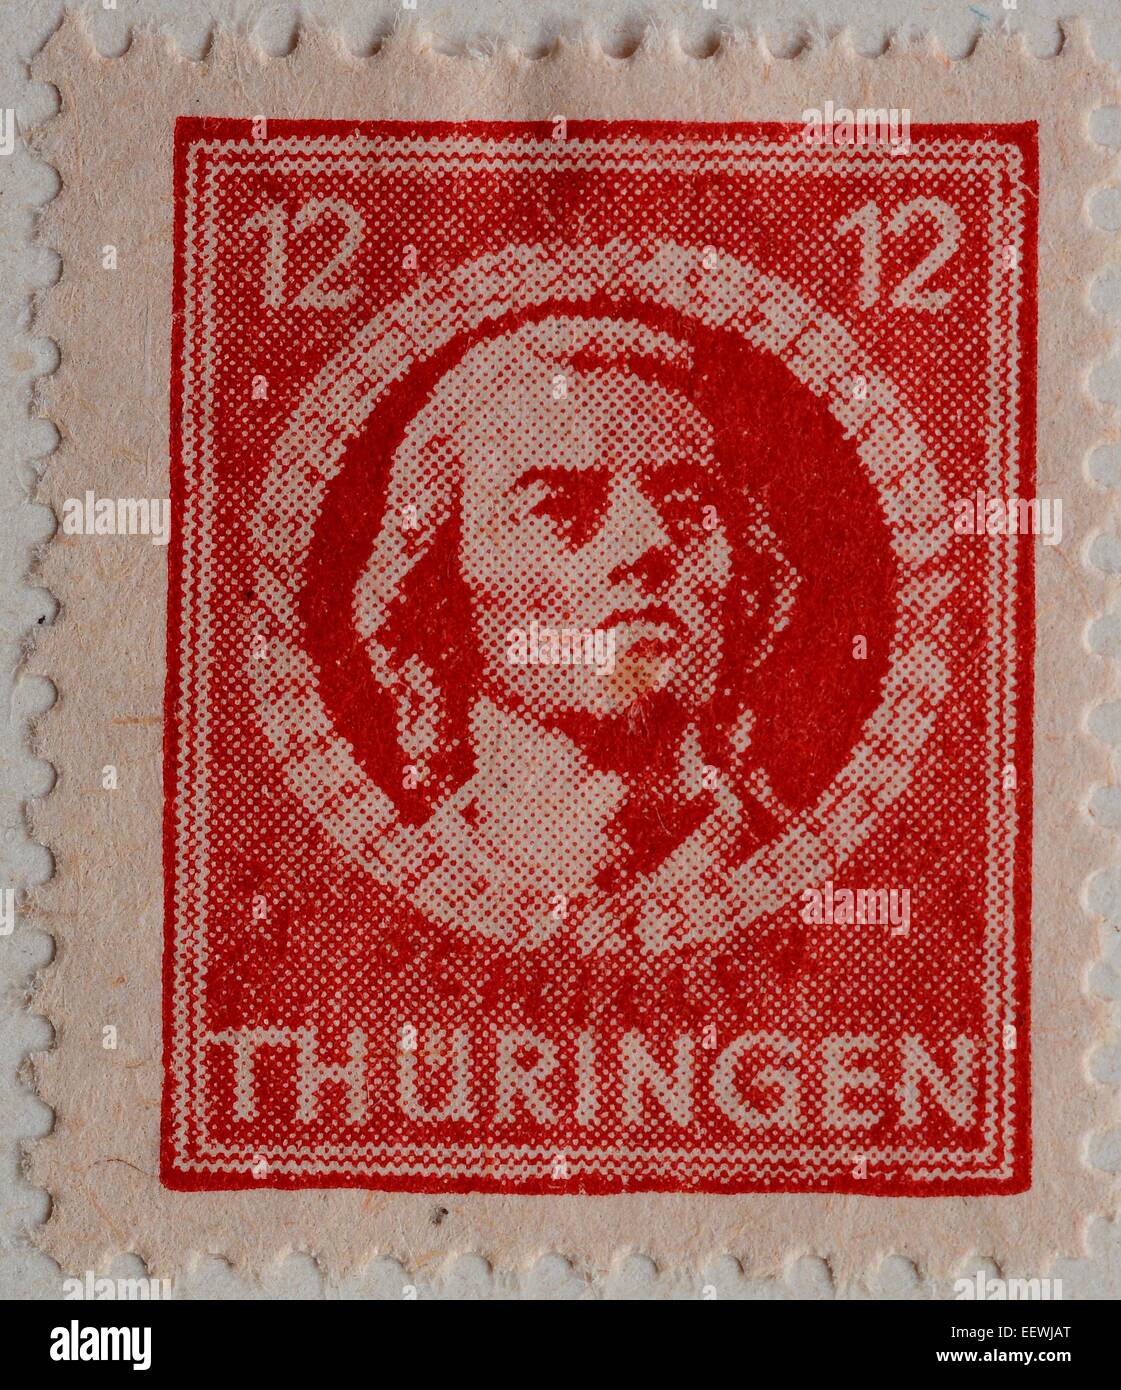 Friedrich von Schiller, ein deutscher Dichter, Philosoph, Historiker und Dramatiker, Porträt auf einer Briefmarke aus Thüringen, 1945 Stockfoto